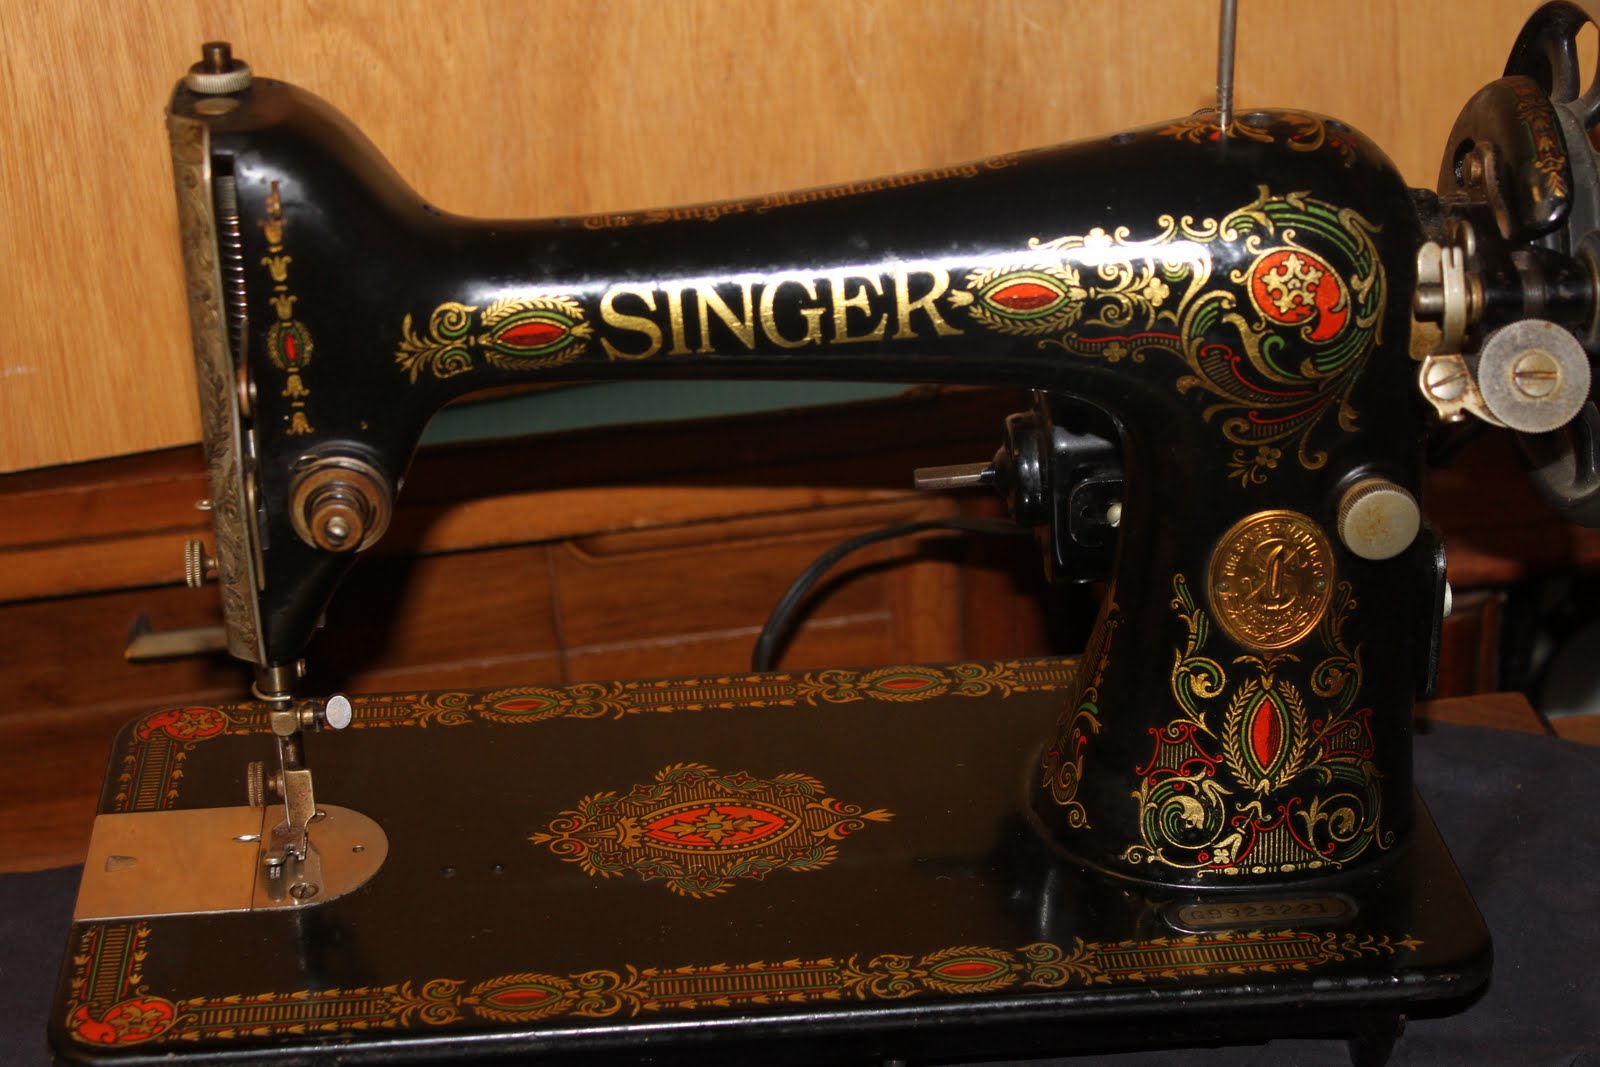 singer sewing machine bobbin case diagram